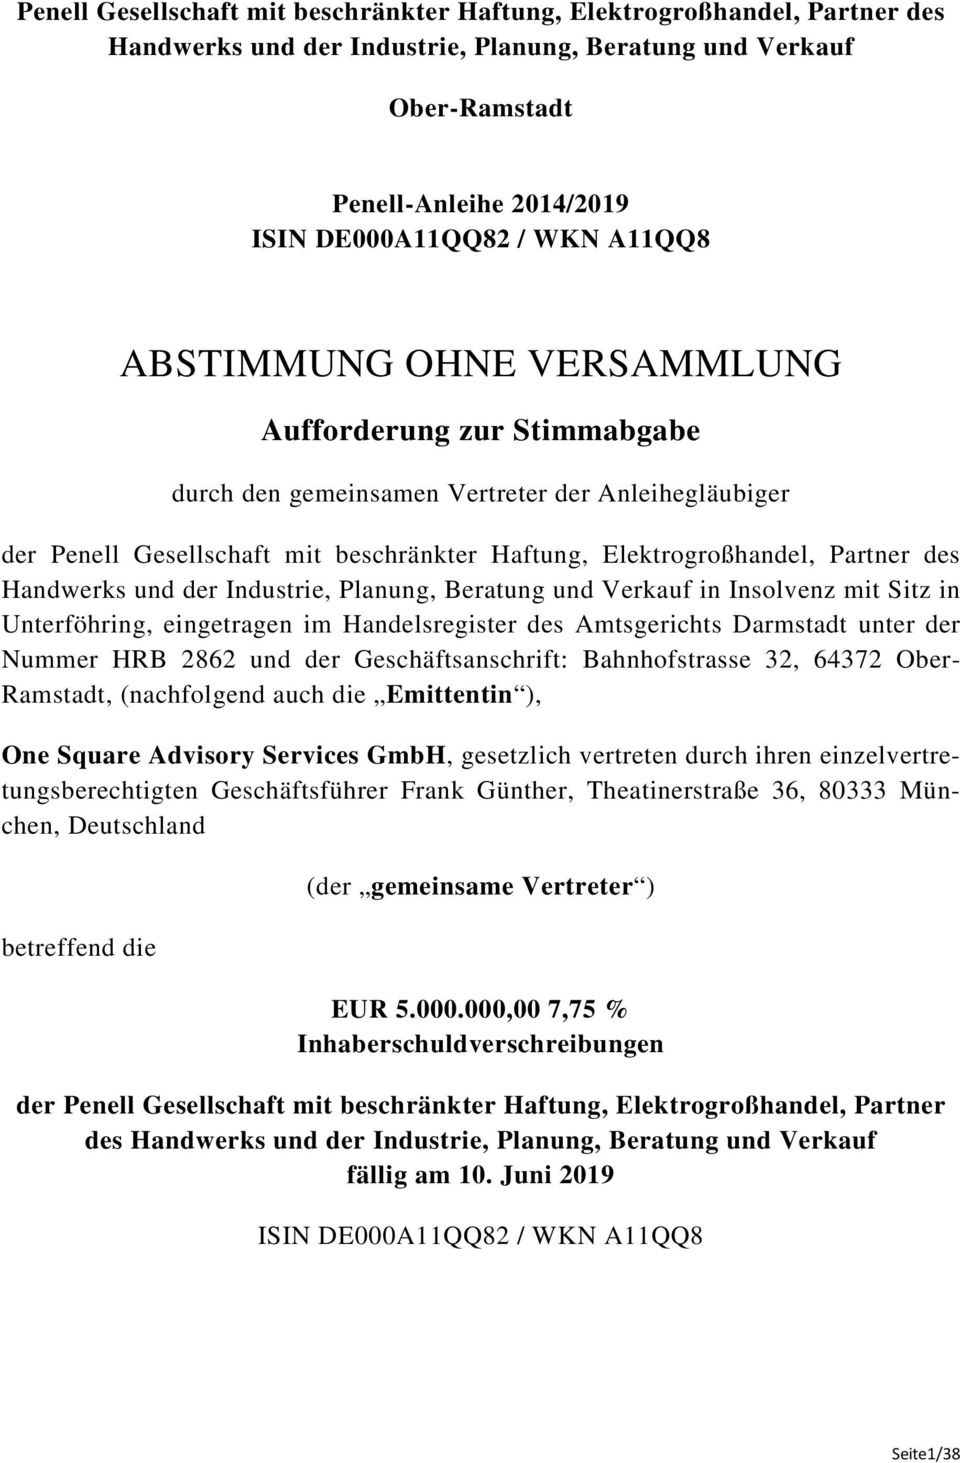 Handwerks und der Industrie, Planung, Beratung und Verkauf in Insolvenz mit Sitz in Unterföhring, eingetragen im Handelsregister des Amtsgerichts Darmstadt unter der Nummer HRB 2862 und der